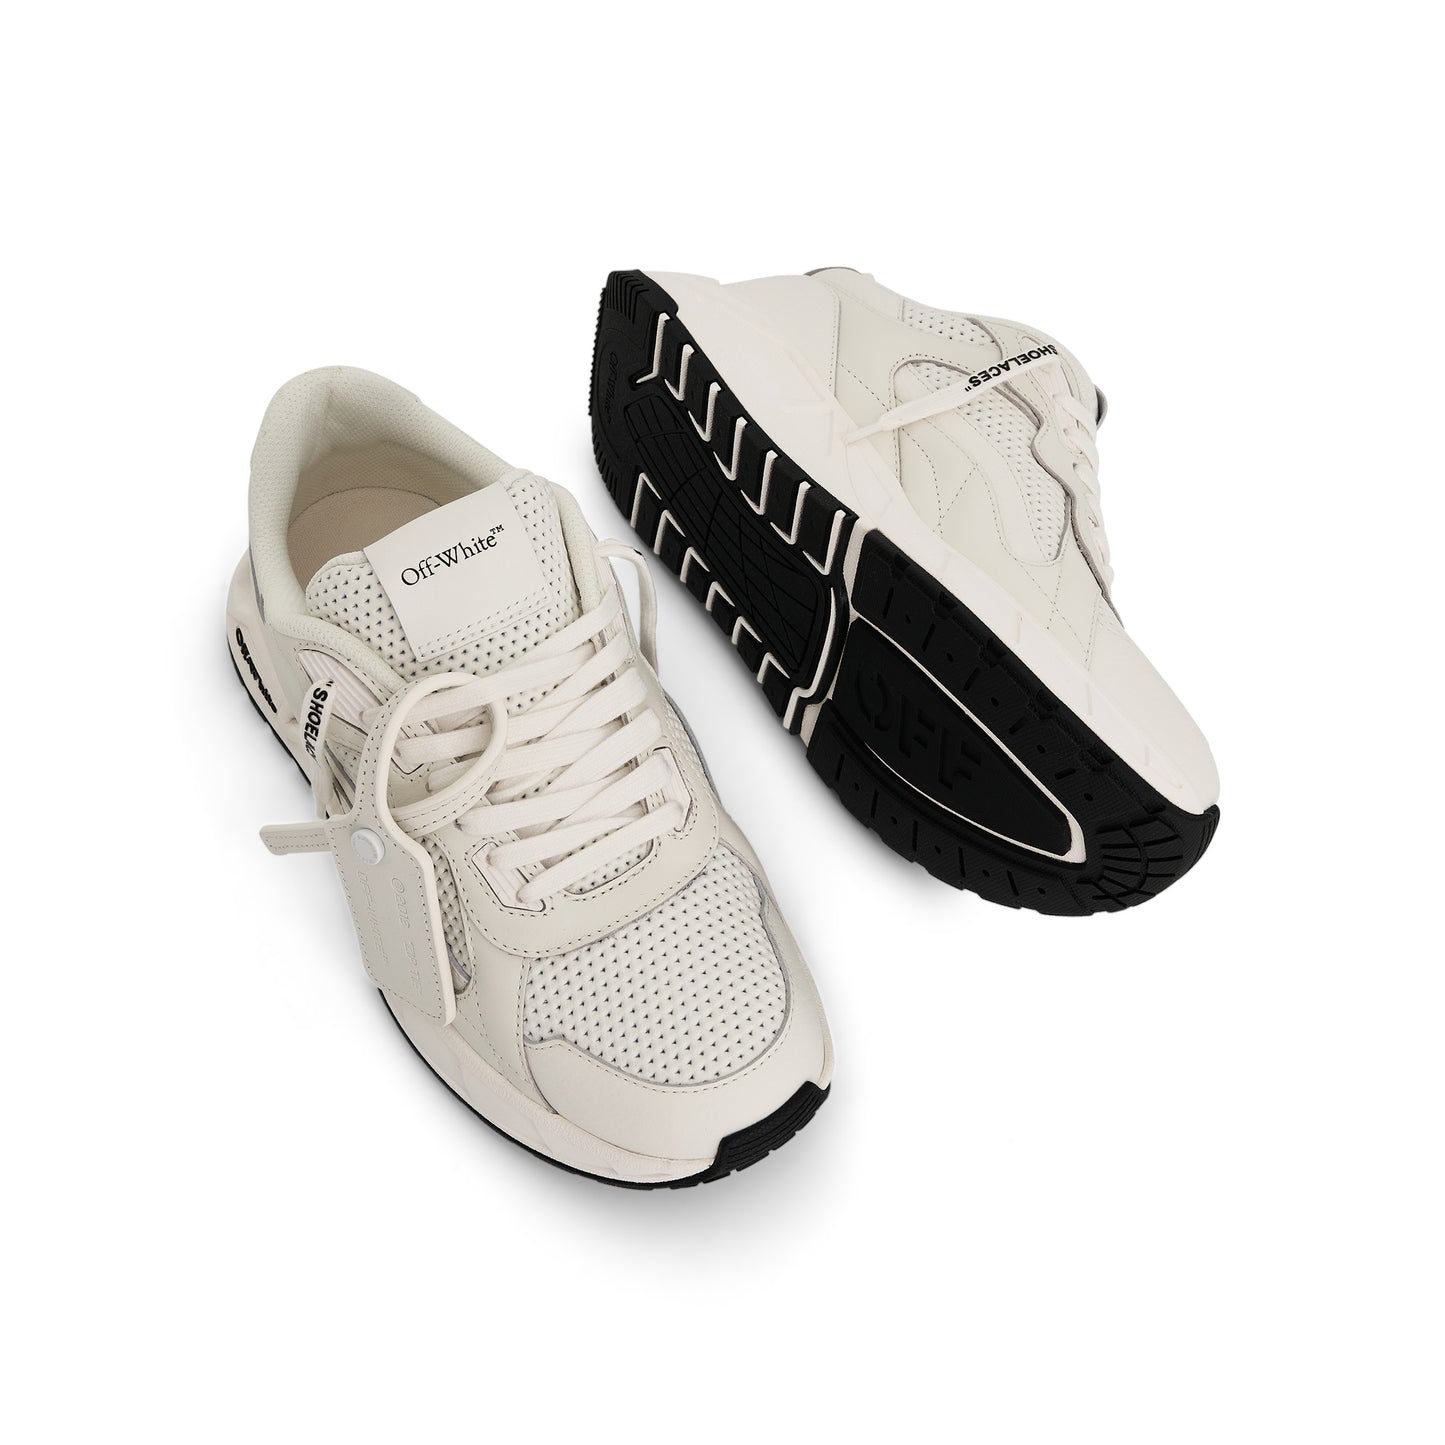 Kick off Sneaker In Colour White